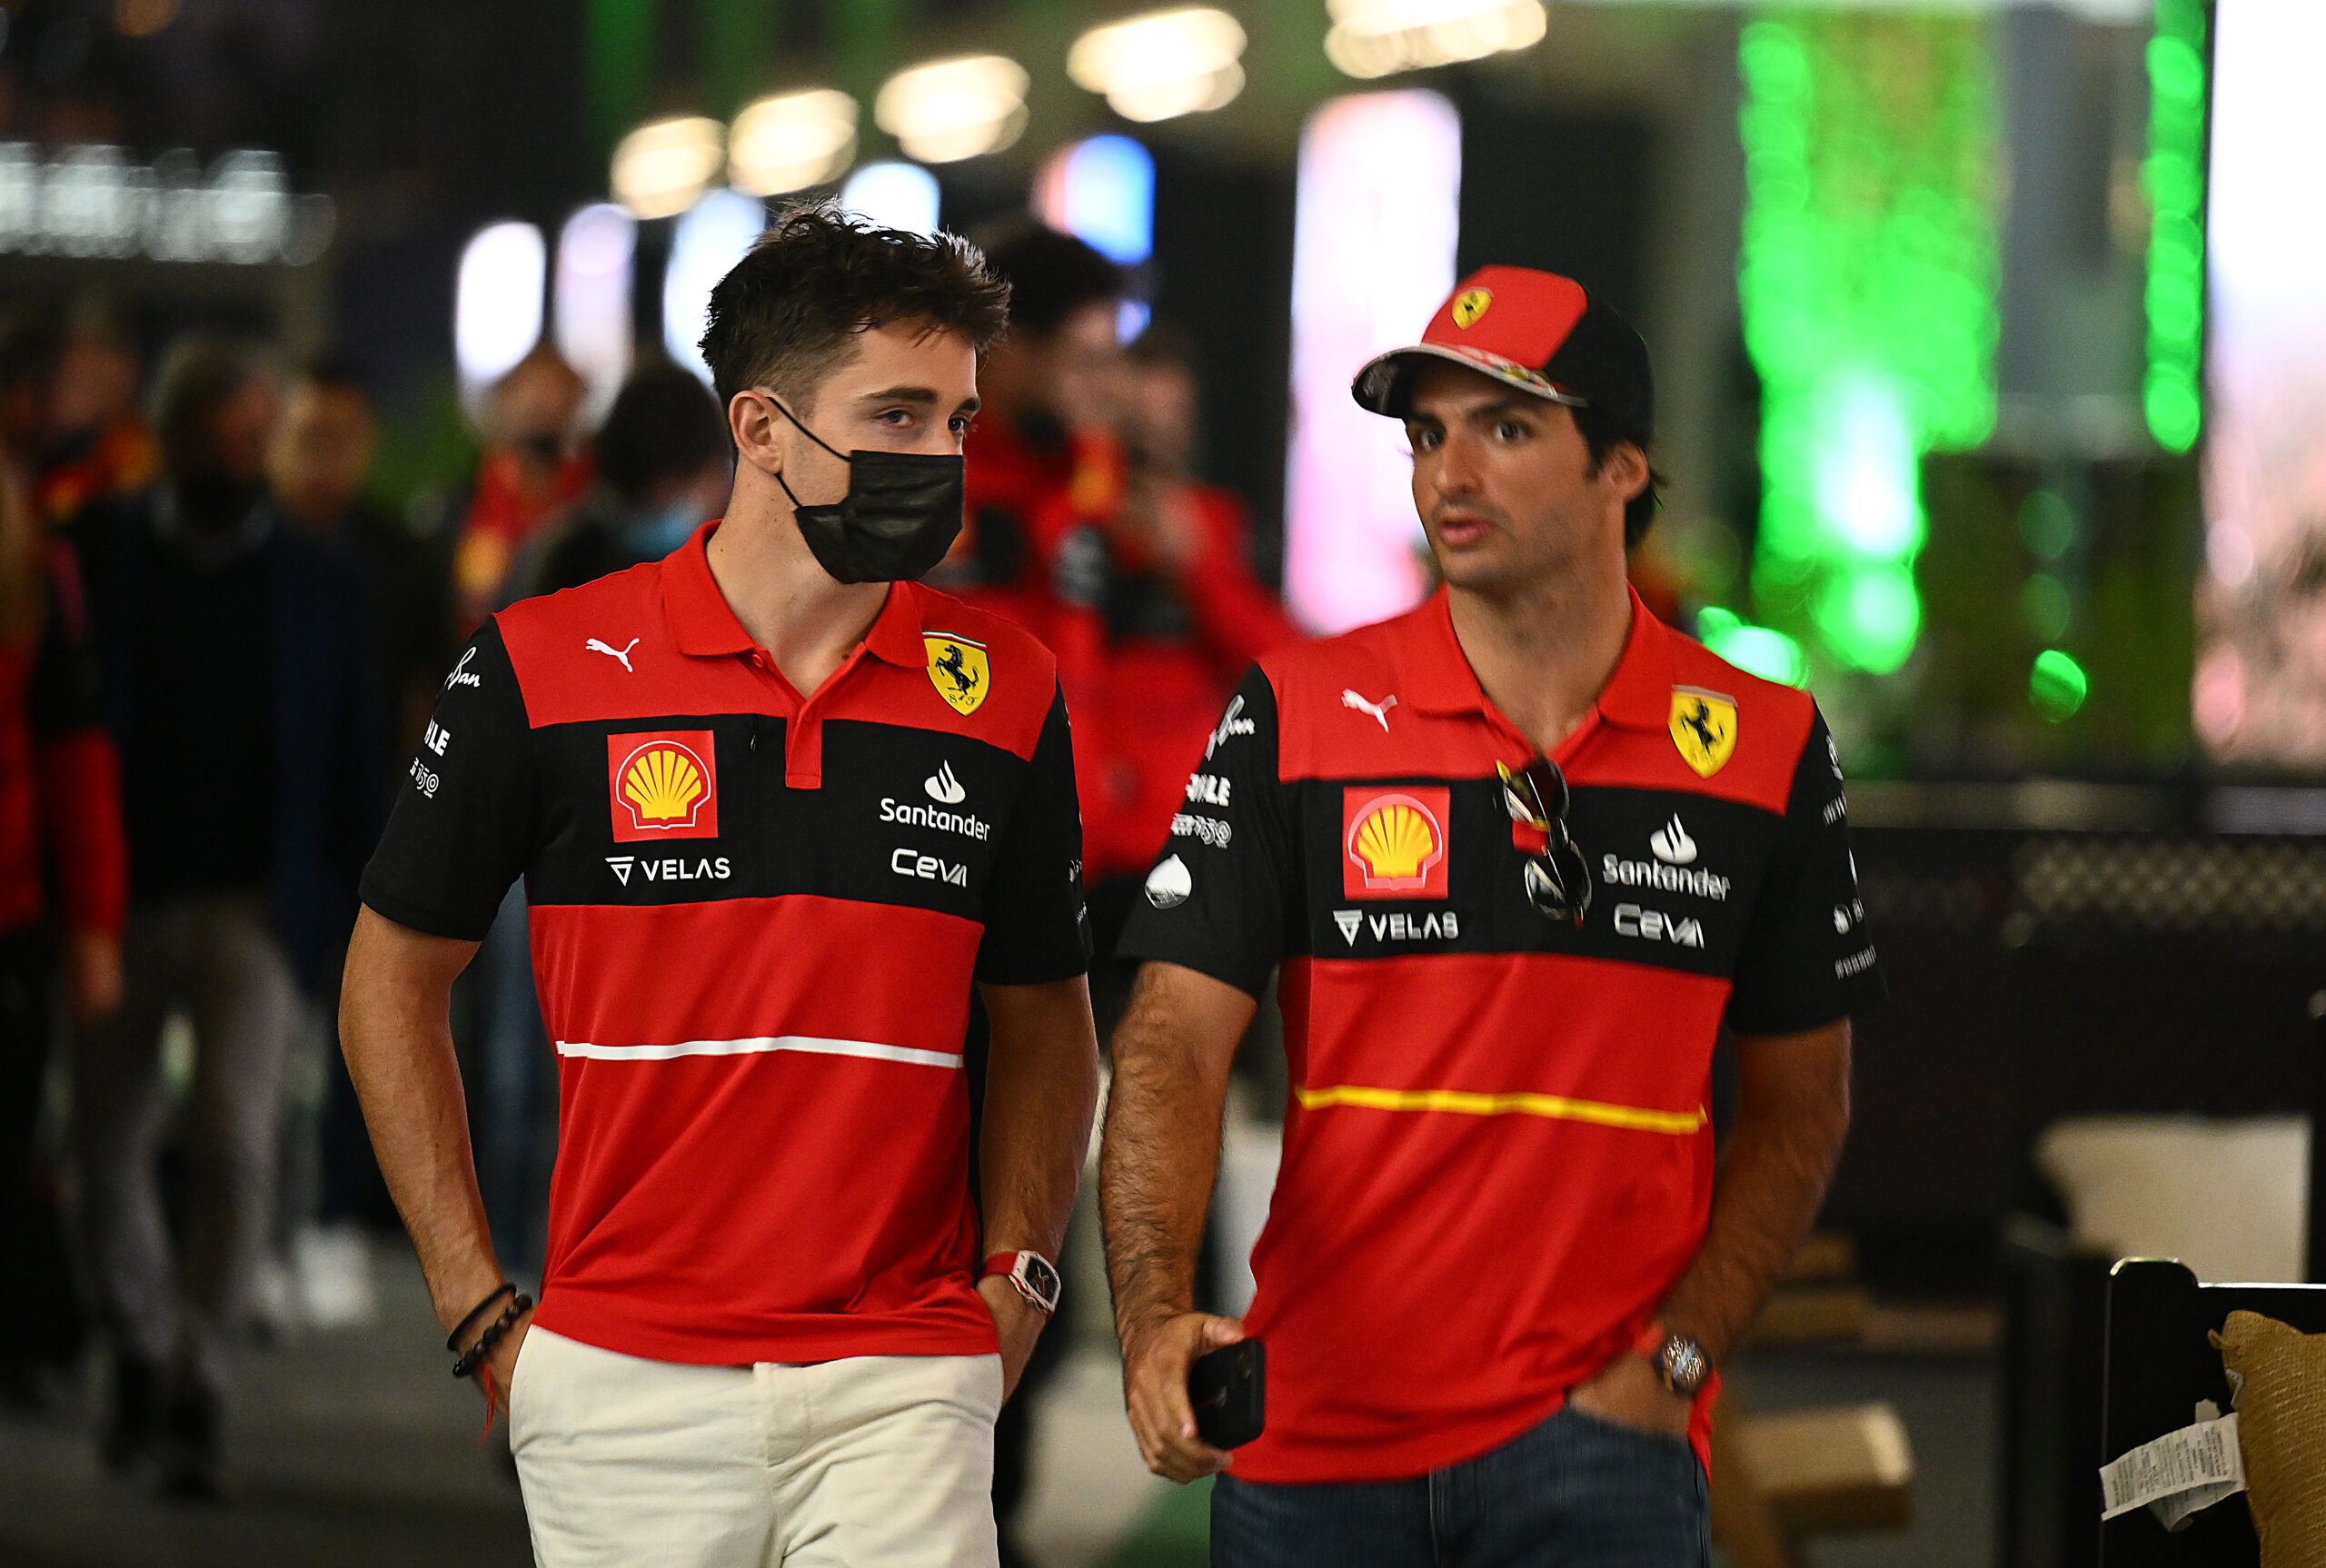 Flavio Briatore dice que Ferrari será la ‘fuerza dominante’ en la F1 esta temporada